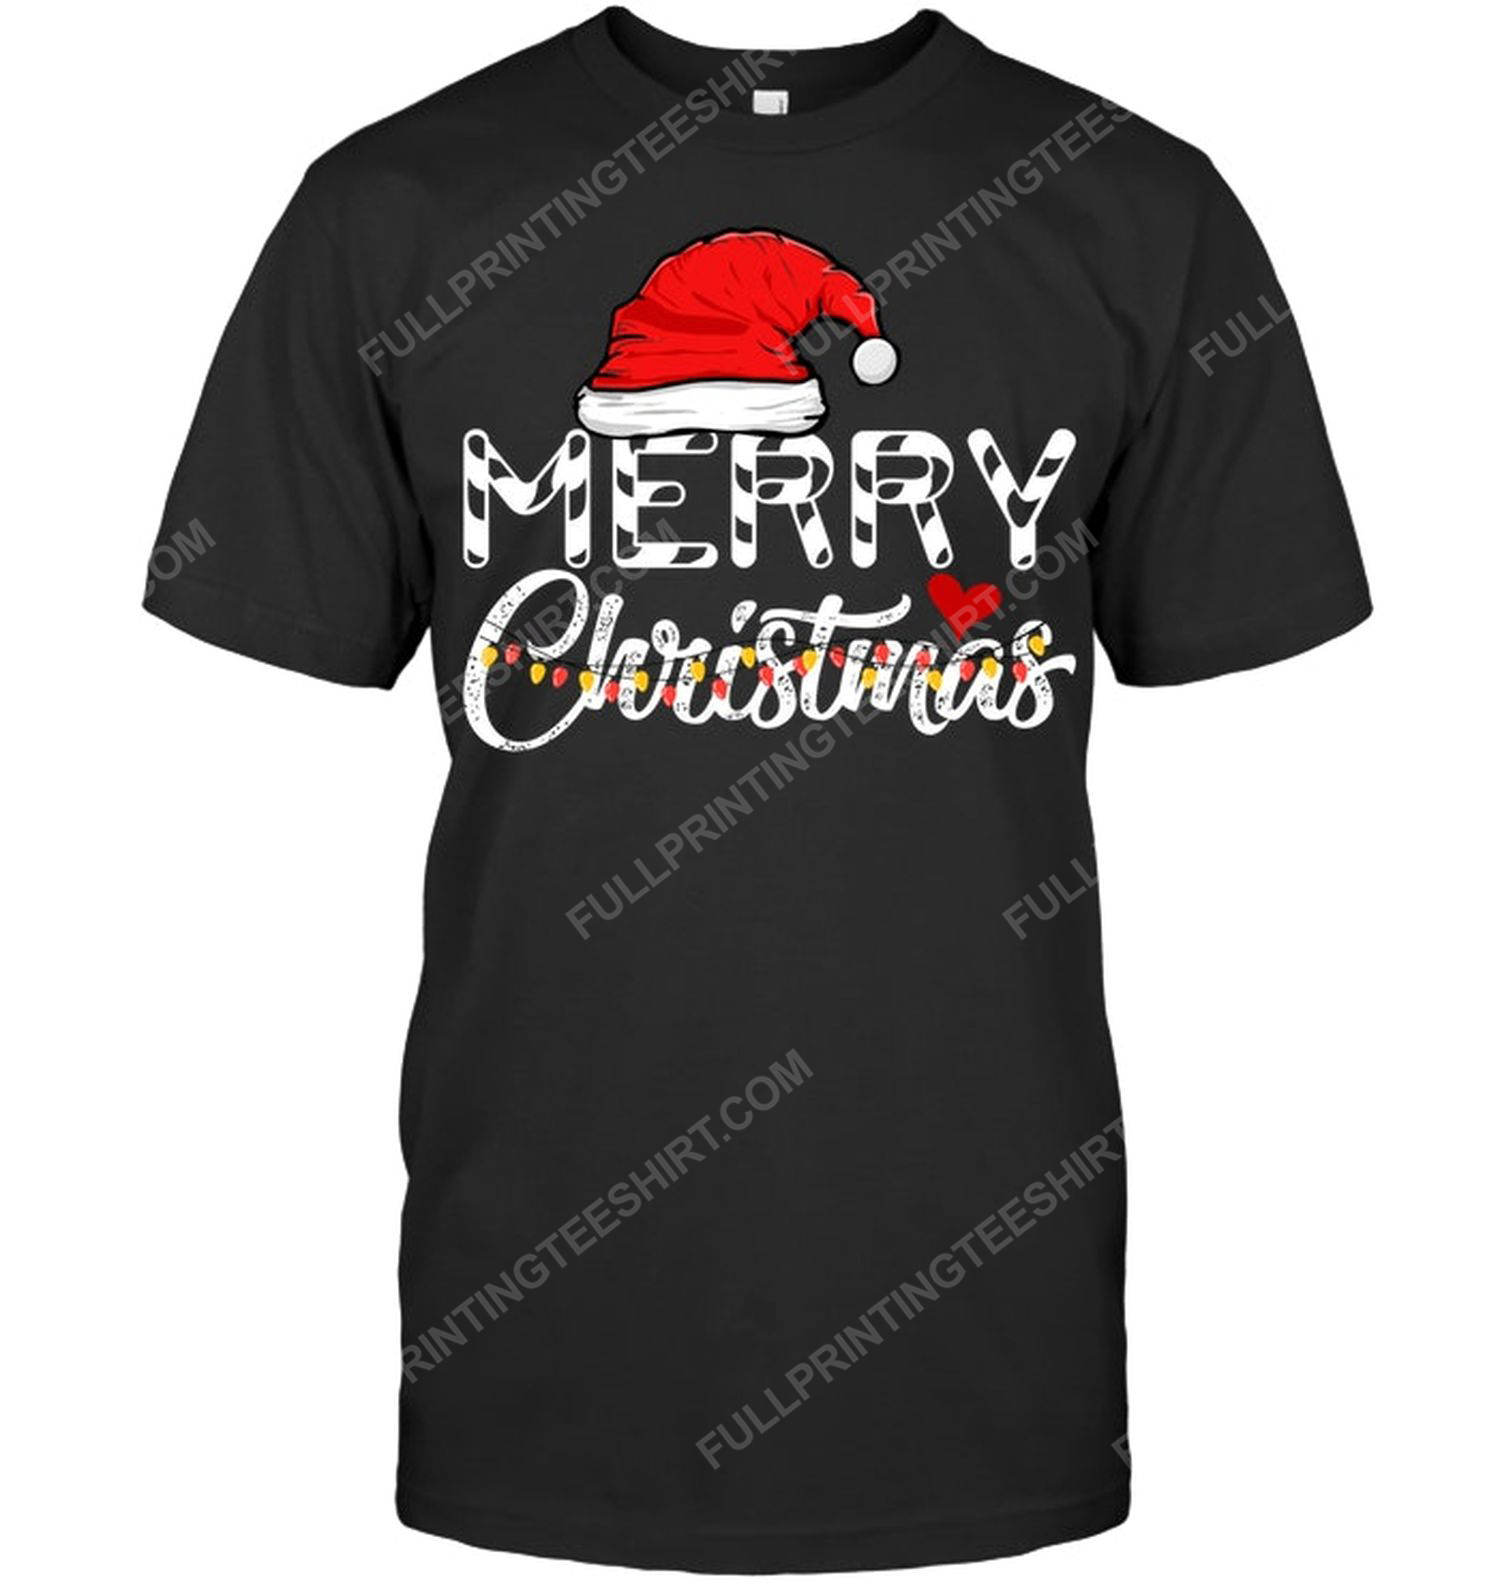 Merry christmas 2021 with christmas light tshirt